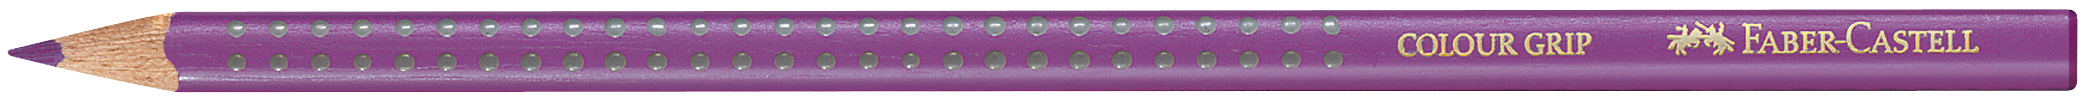 FABER-CASTELL Crayon de couleur Colour Grip 112434 karmin karmin